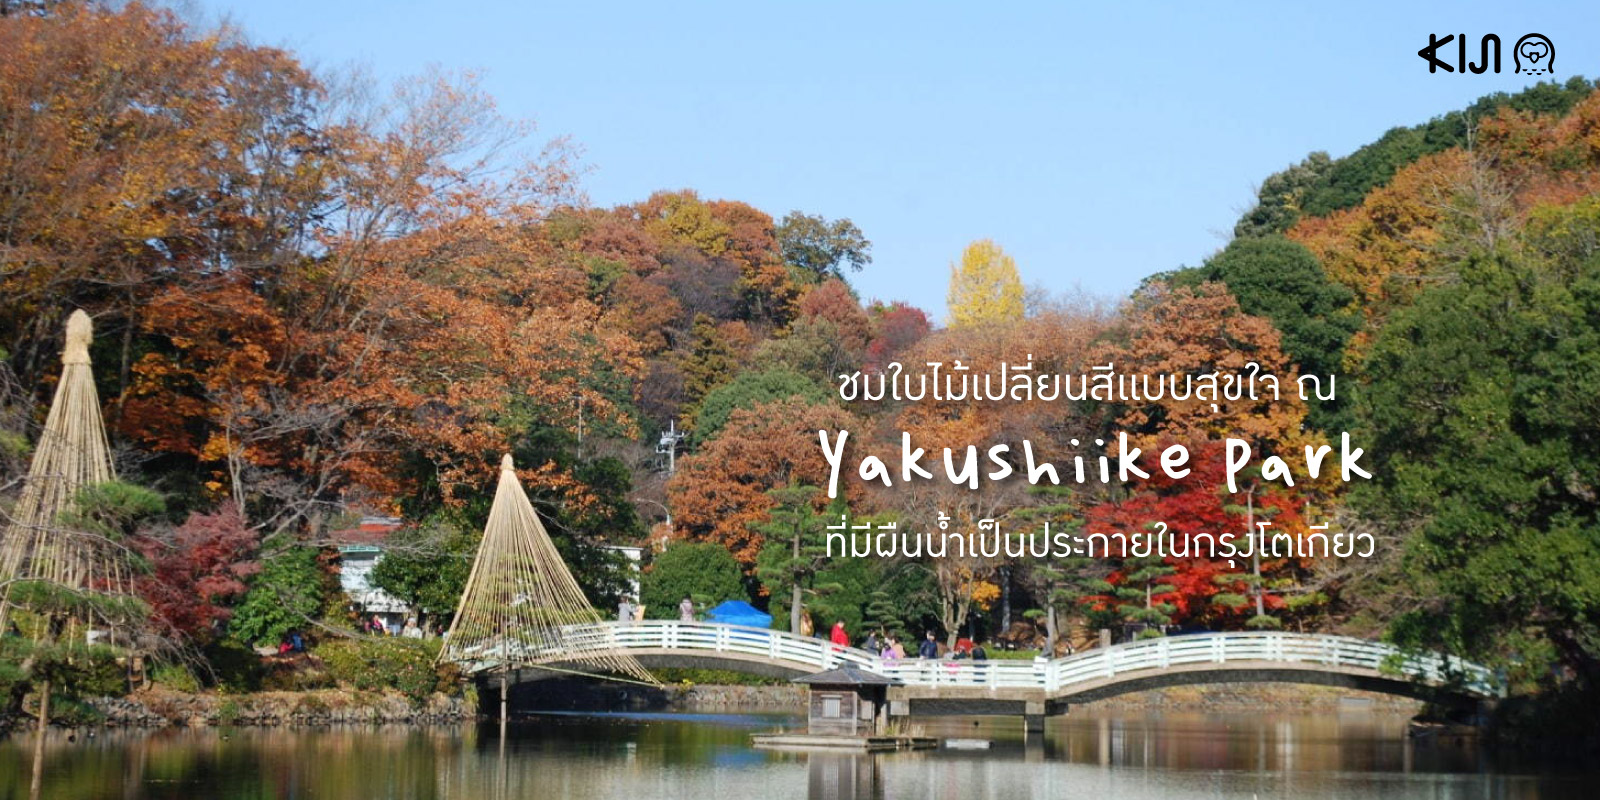 สวนสาธารณะ Yakushiike Park ช่วงฤดูใบไม้เปลี่ยนสี